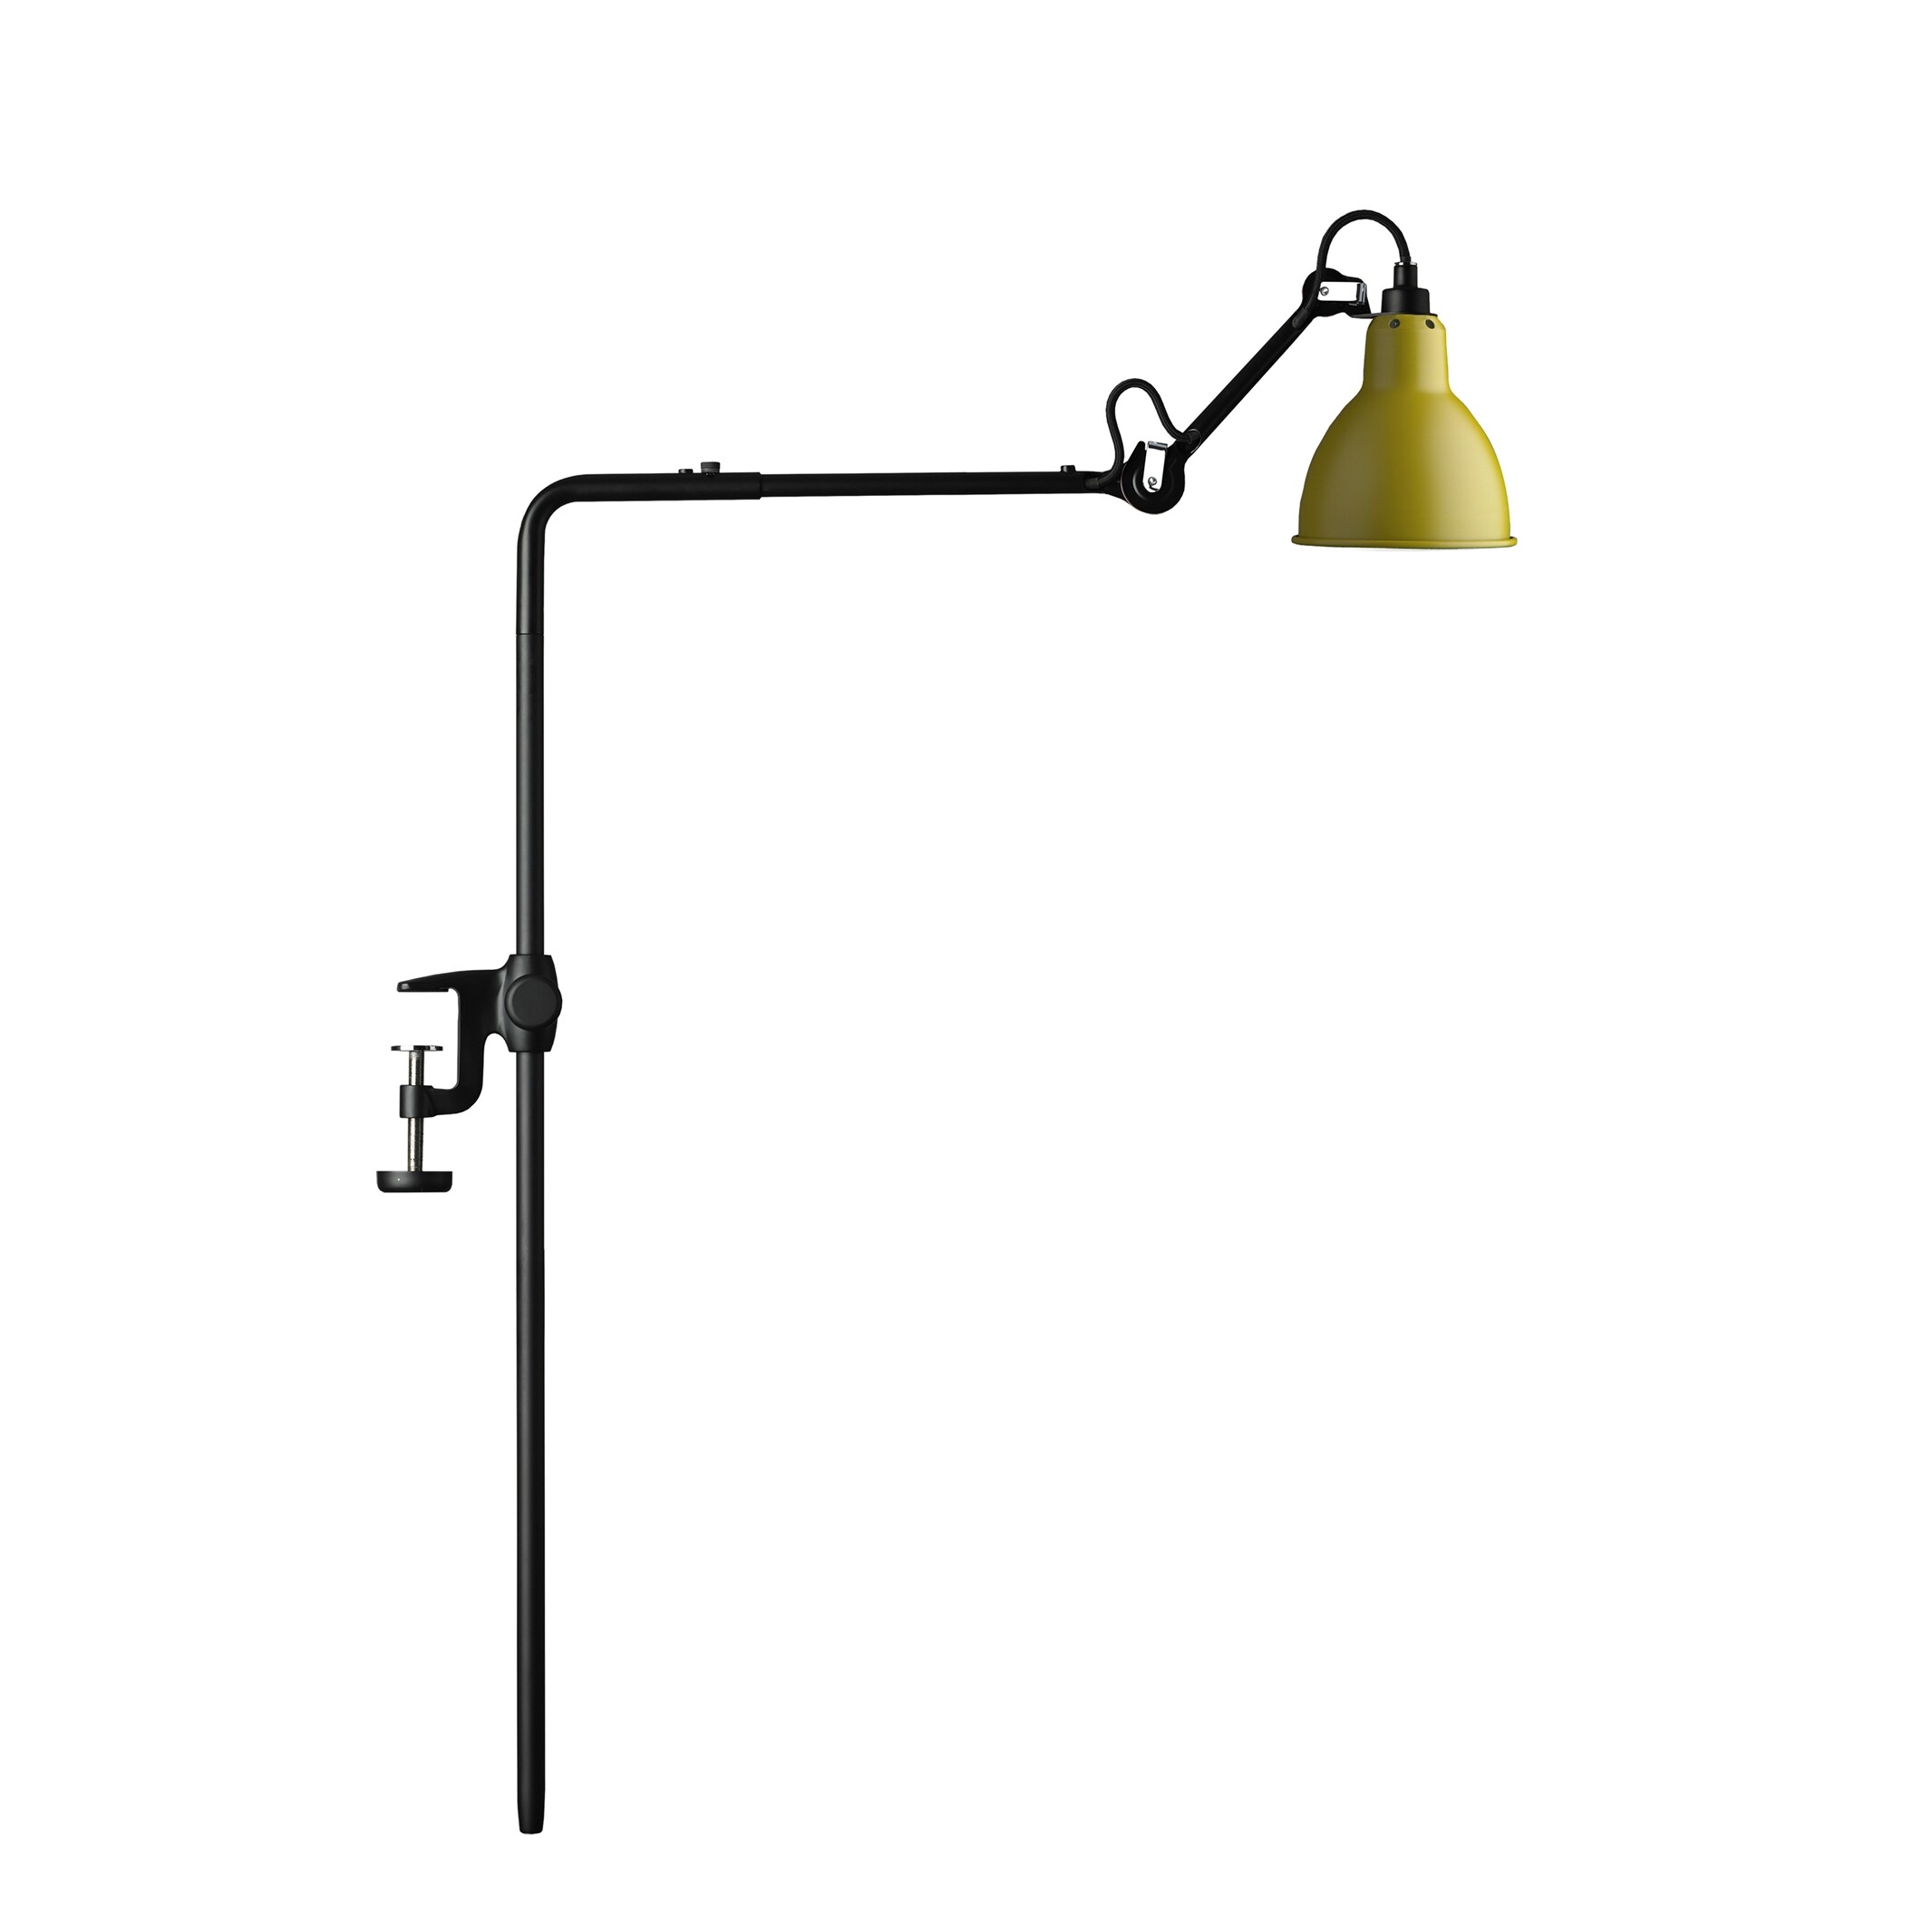 Image of 226 Bordlampe/Reol Lampe Gul - Lampe Gras (5611119)